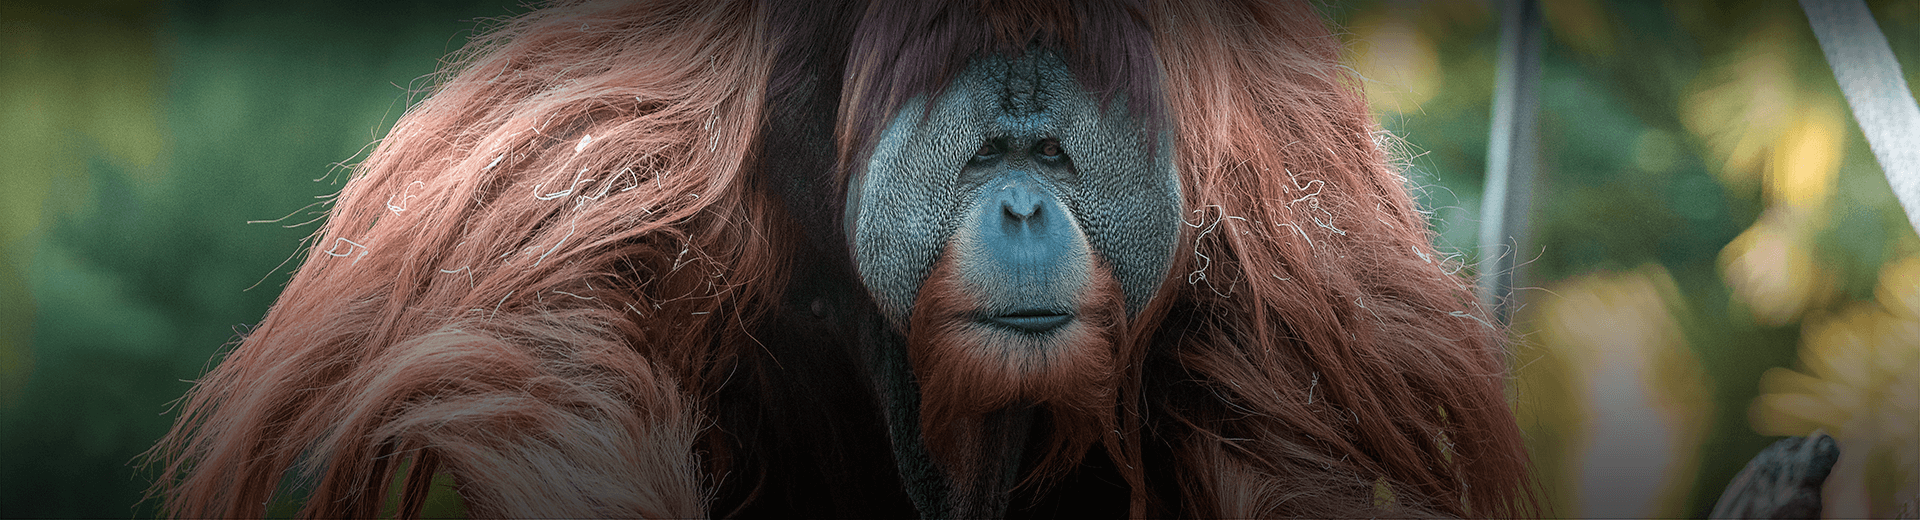 Oranguatan looks at the camera